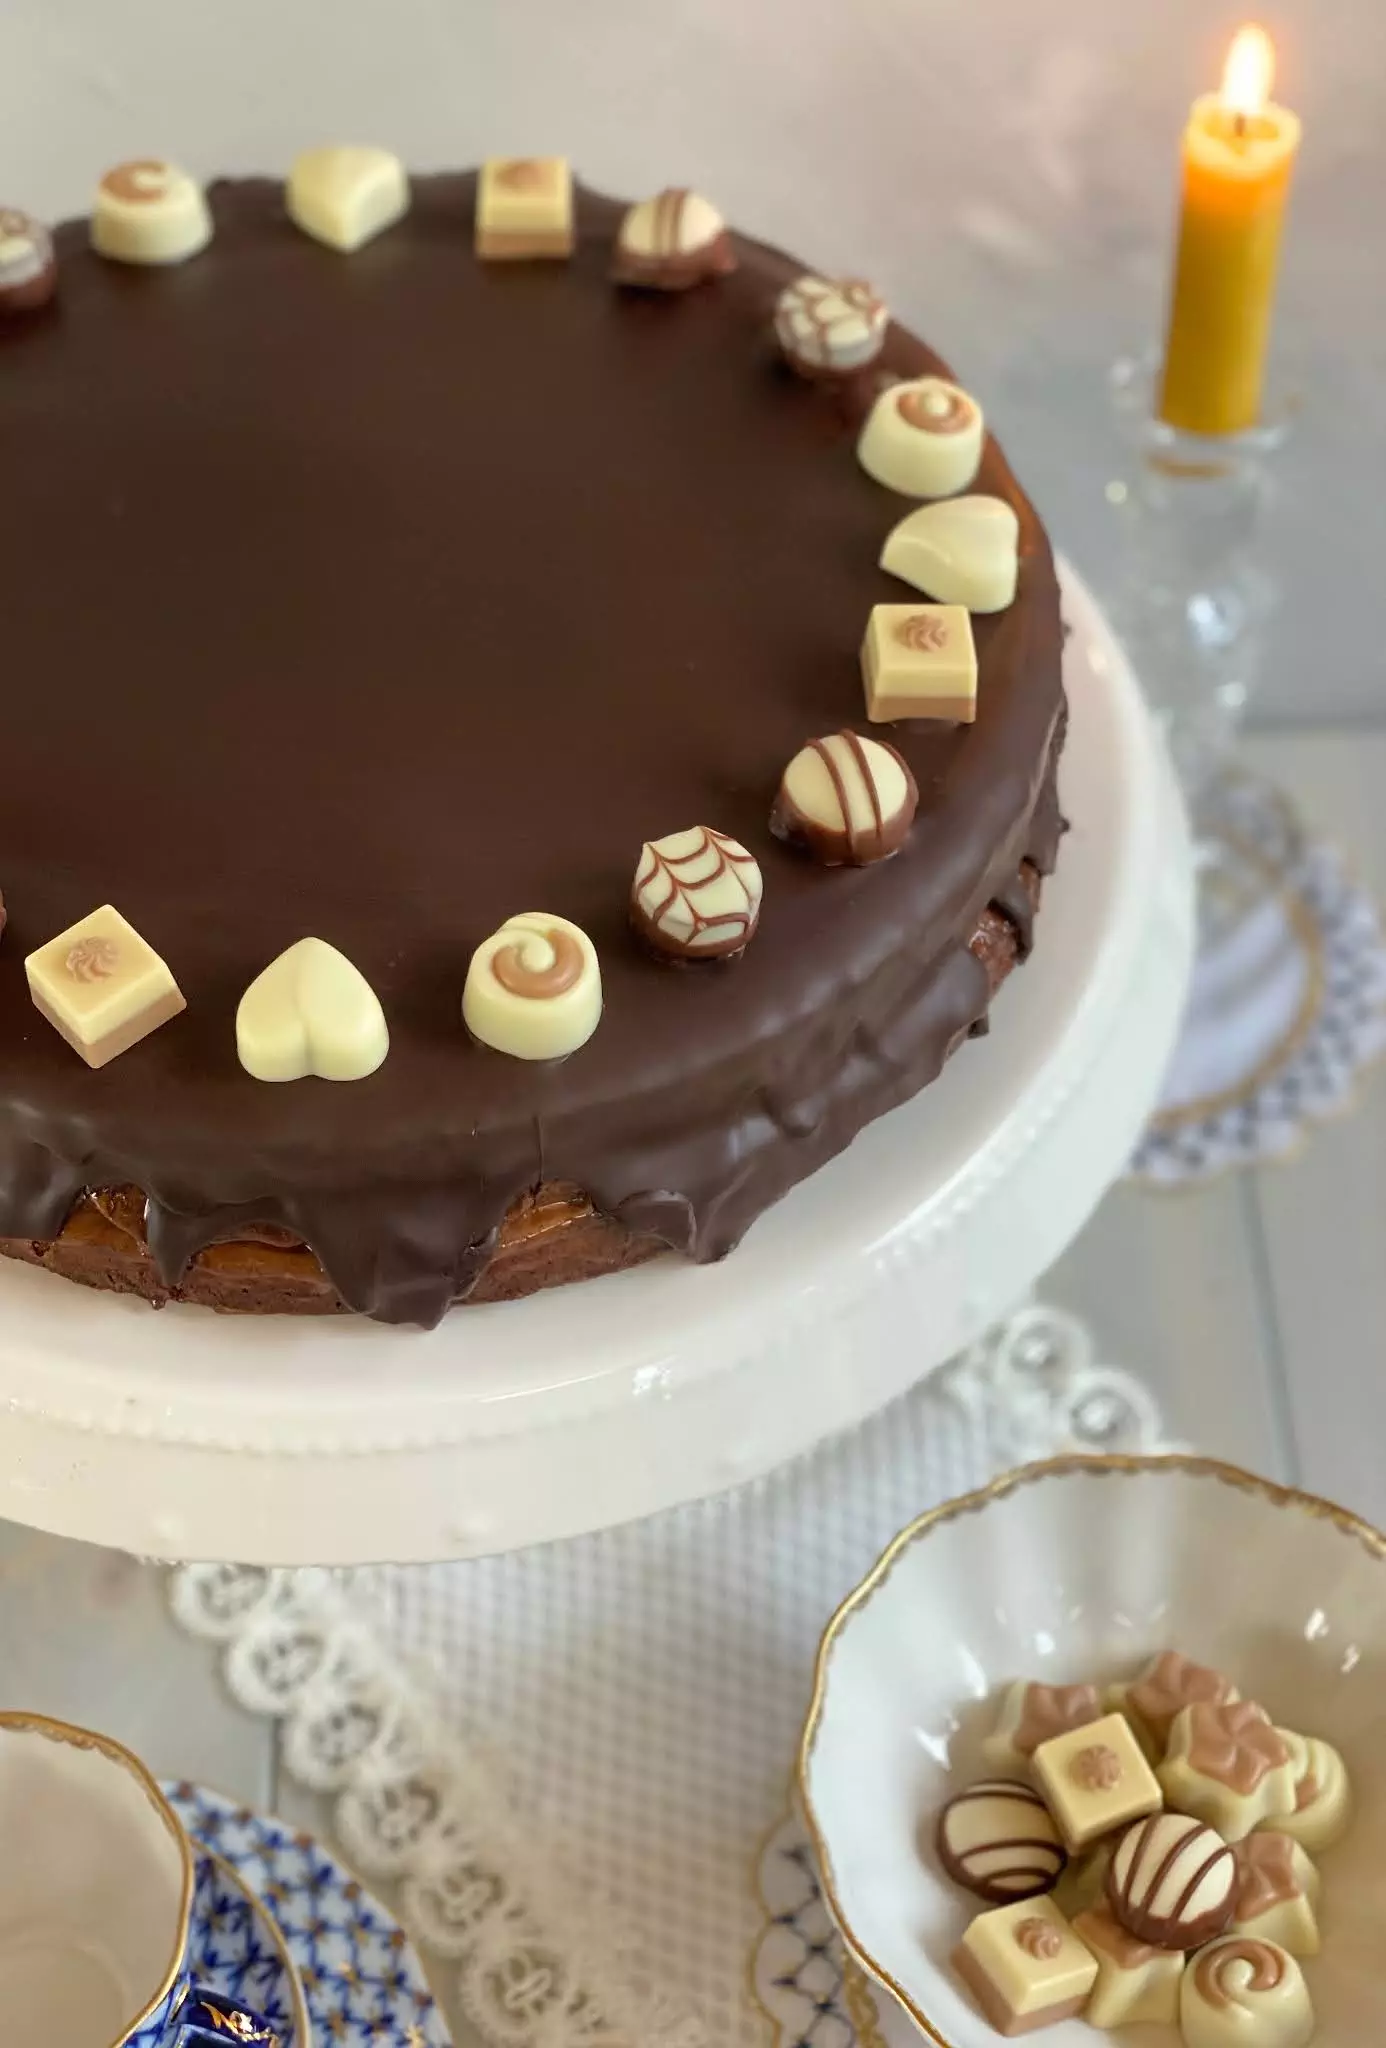 Saftige Schoko-Nougat-Torte /Wiener Kaffeehaus-Torte | Rezept, Video und Gewinnspiel von Sugarprincess